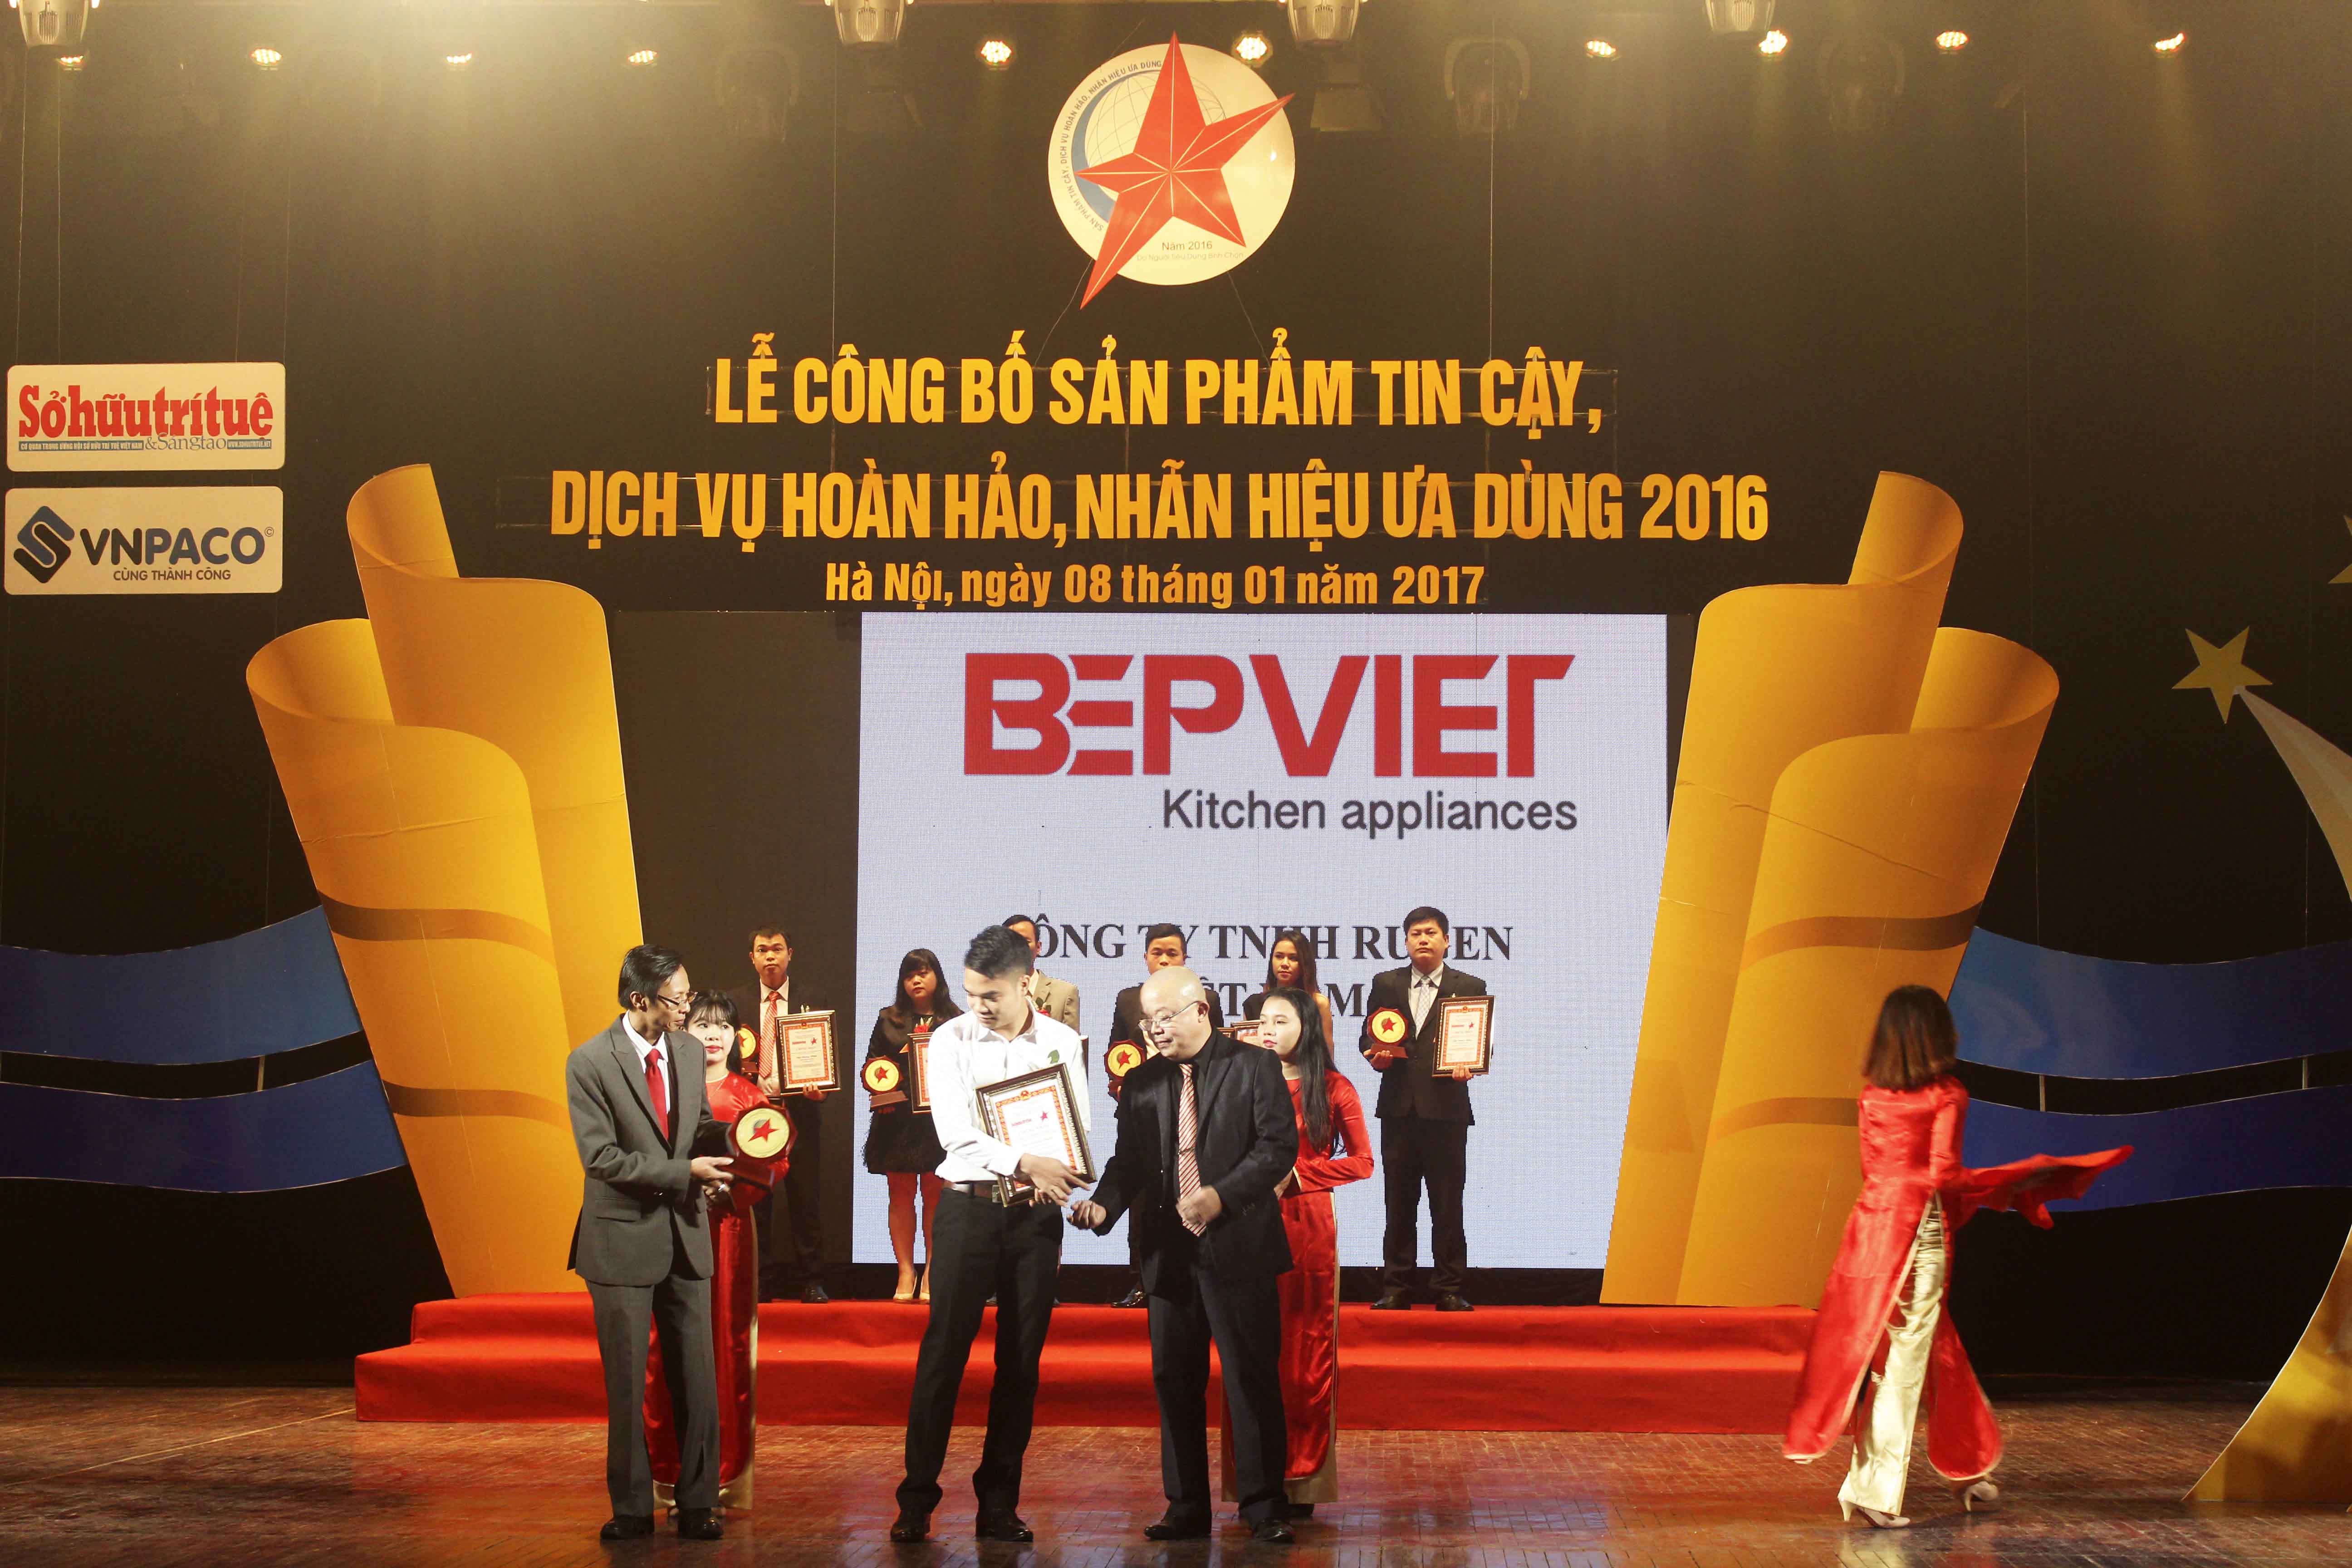 Công ty TNHH Rugen Việt Nam vinh dự đạt danh hiệu “Sản phẩm tin cậy, Dịch vụ hoàn hảo, Nhãn hiệu ưa dùng năm 2016”.